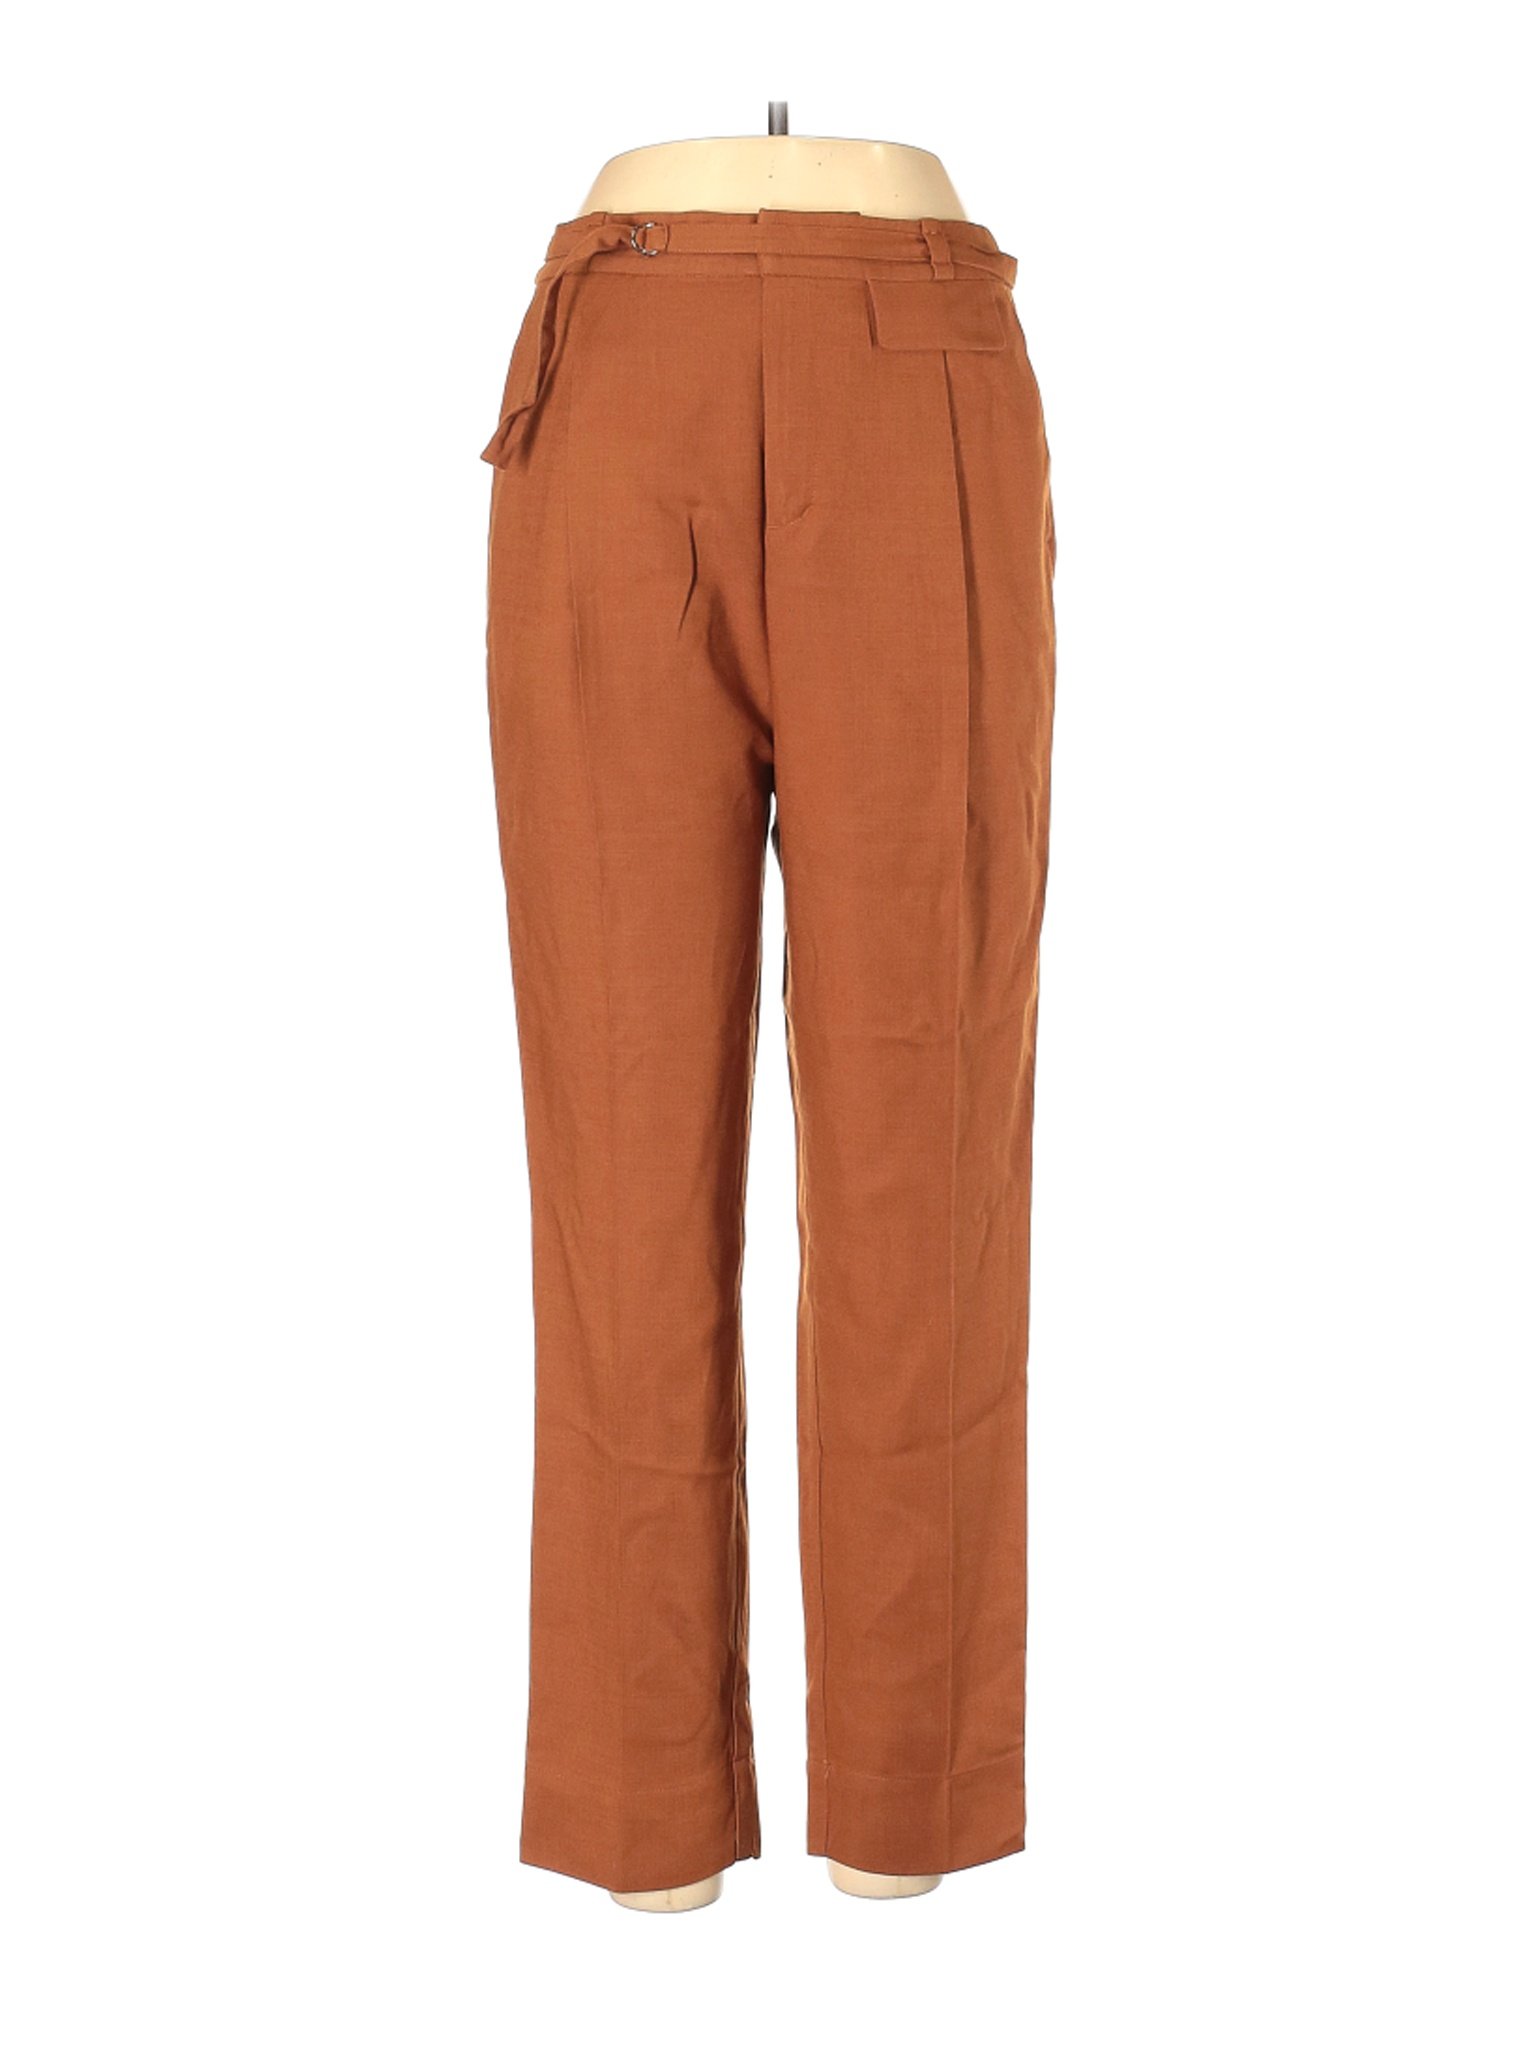 Frank And Oak Women Orange Dress Pants 10 | eBay